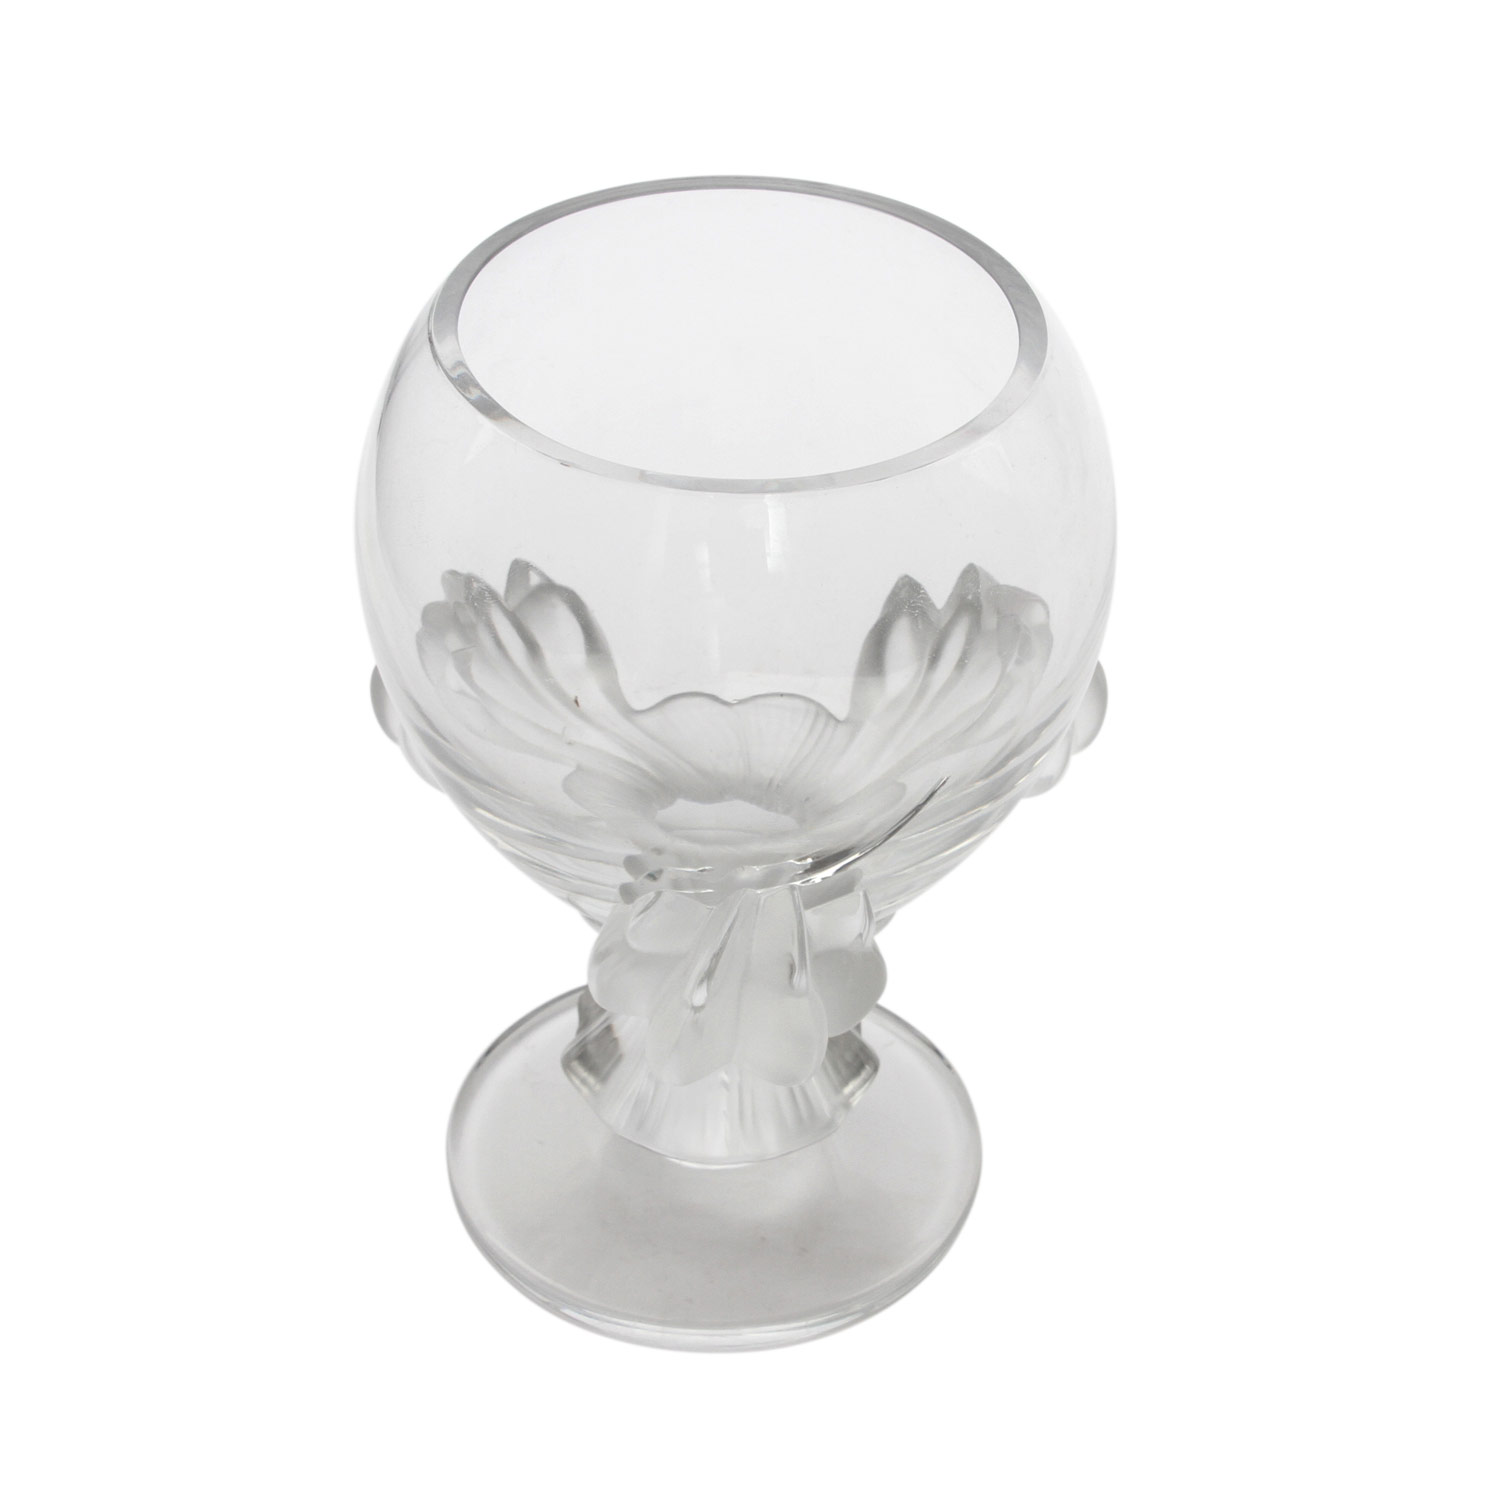 LALIQUE GLASPOKAL Frankreich, farbloses Kristallglas, von drei satinierten Klauenfüßen getragene, - Image 6 of 7